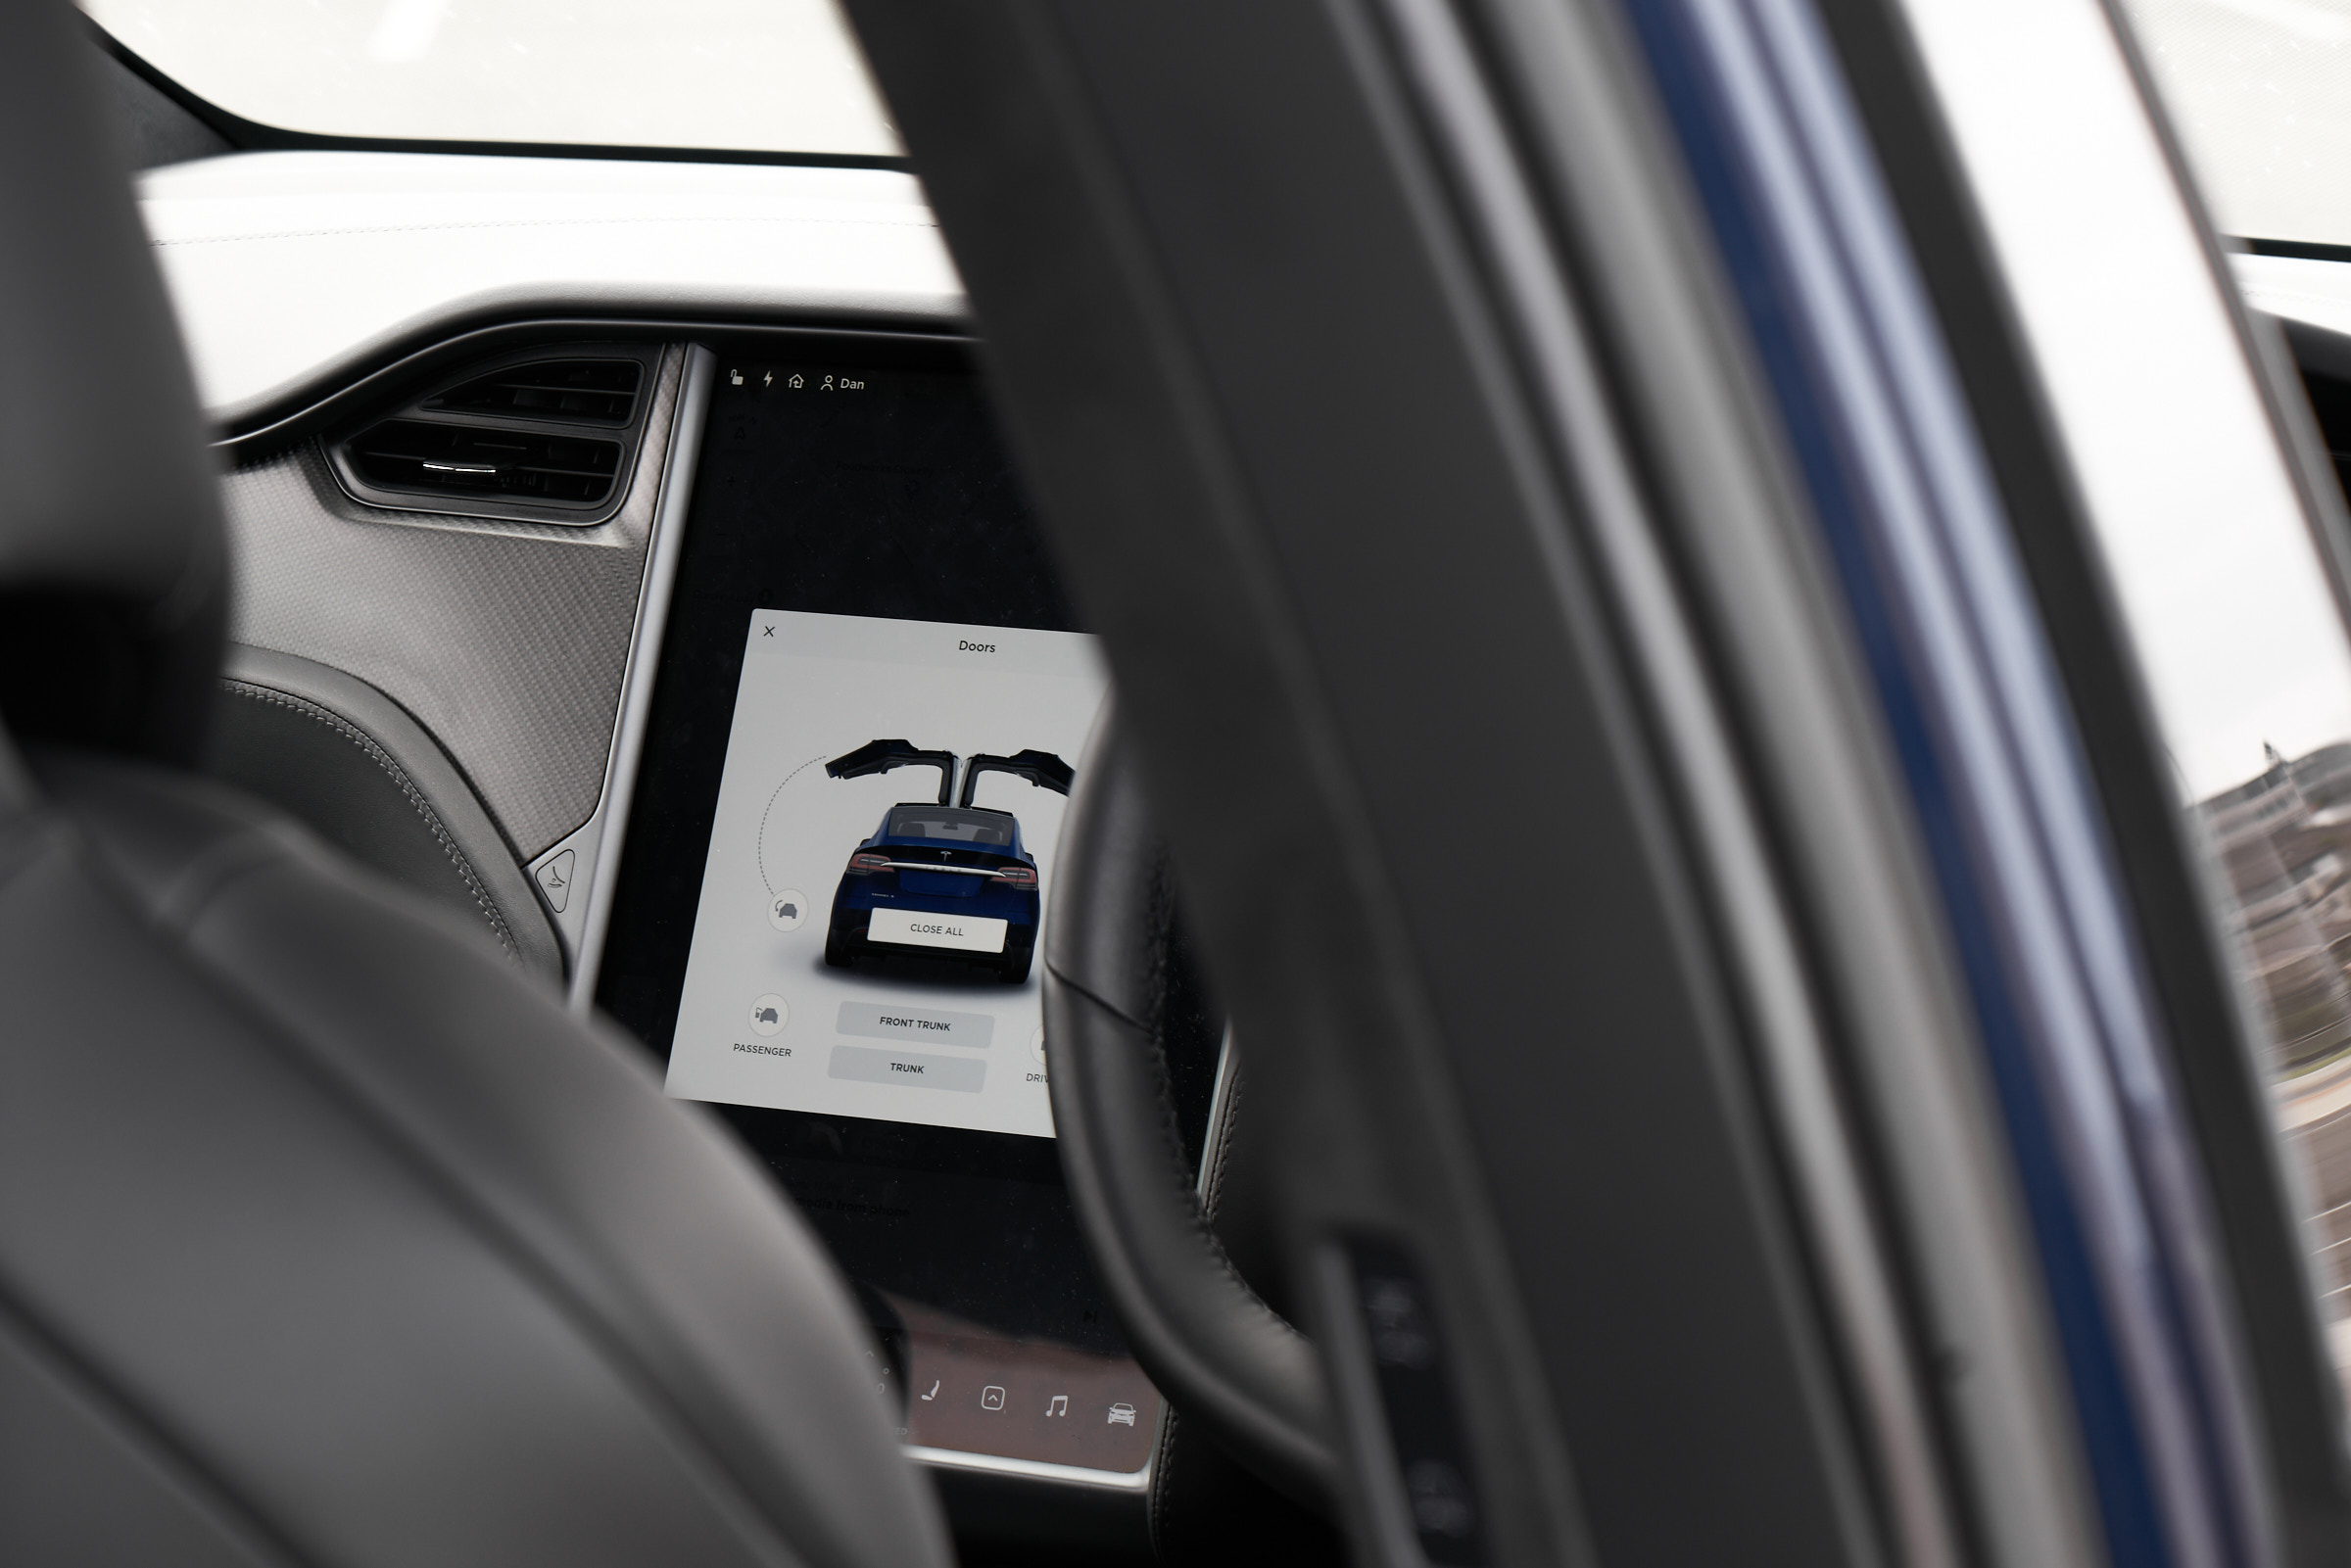 In Focus: Tesla Model X